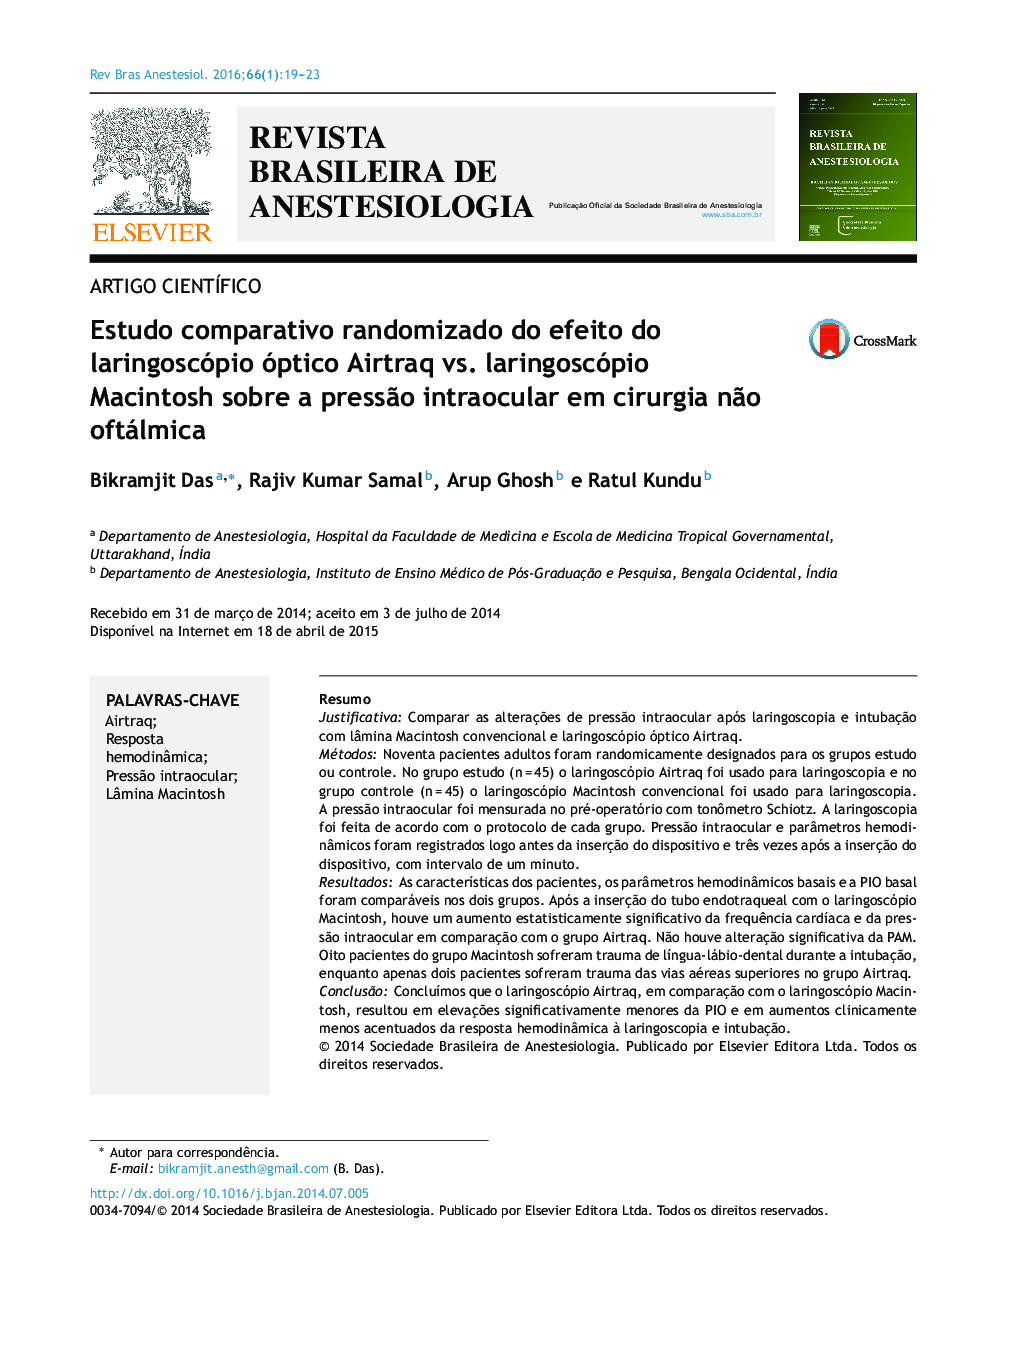 Estudo comparativo randomizado do efeito do laringoscópio óptico Airtraq vs. laringoscópio Macintosh sobre a pressão intraocular em cirurgia não oftálmica